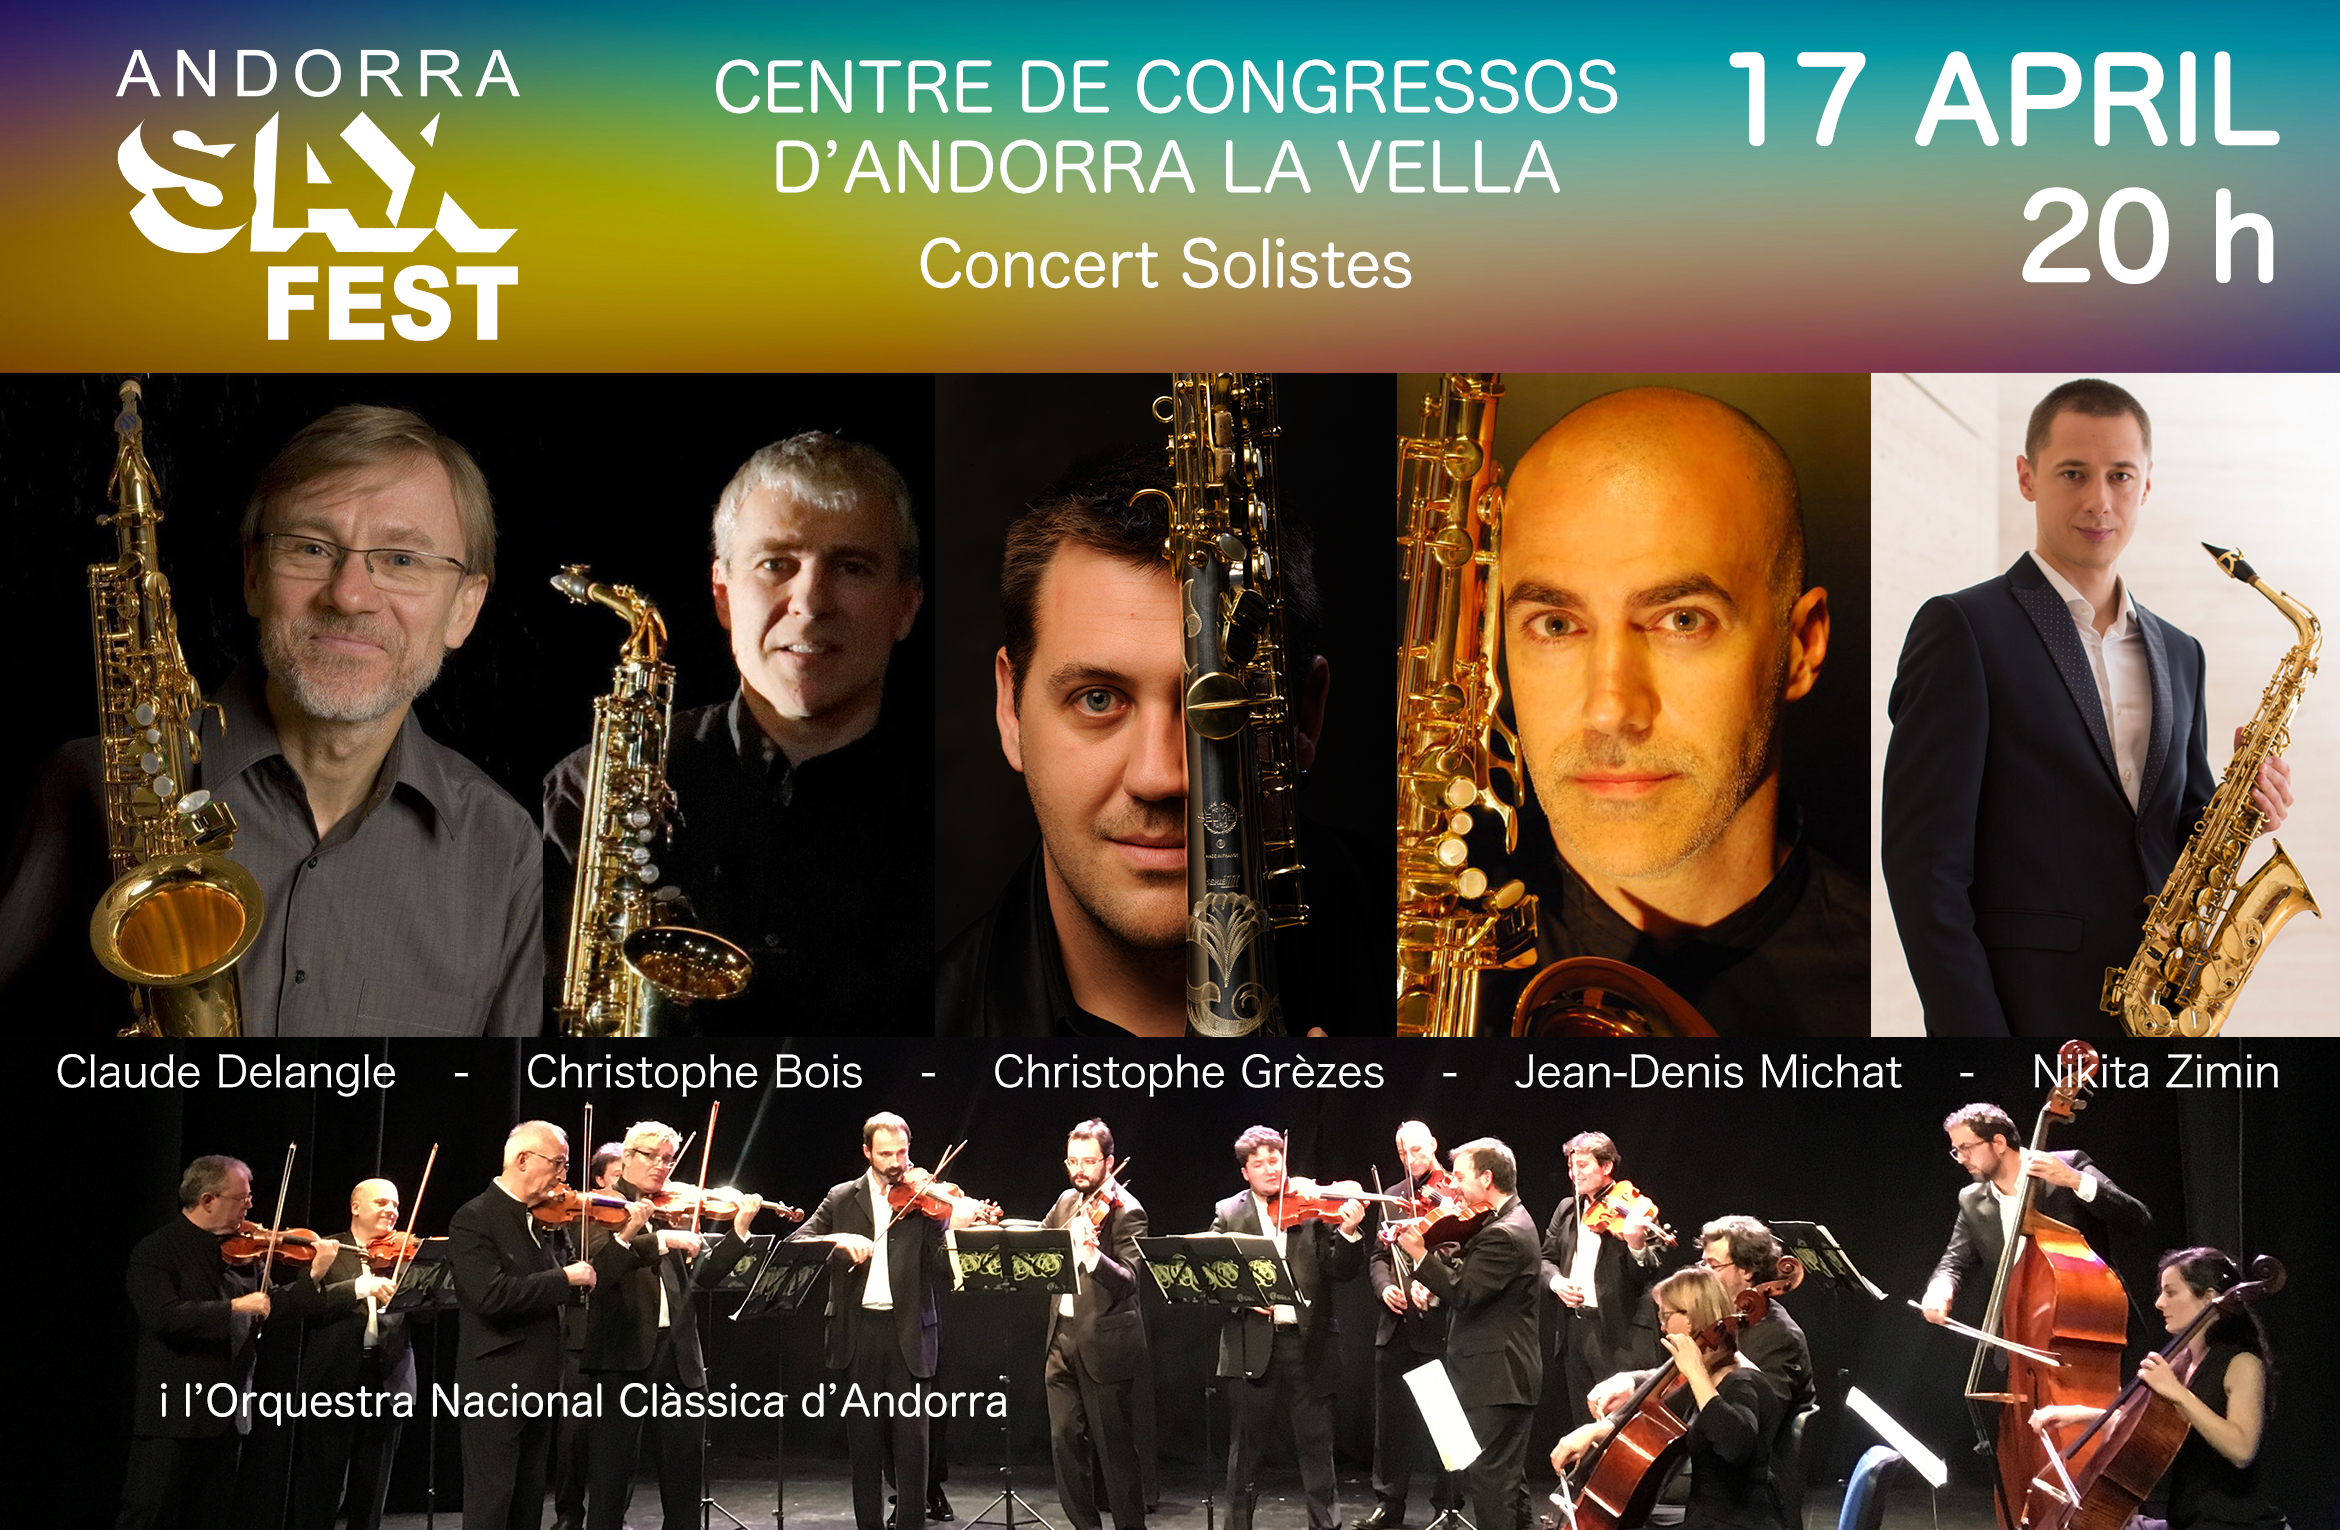 La Fundació ONCA col·labora amb l’Andorra Sax Fest i el primer concert de solistes